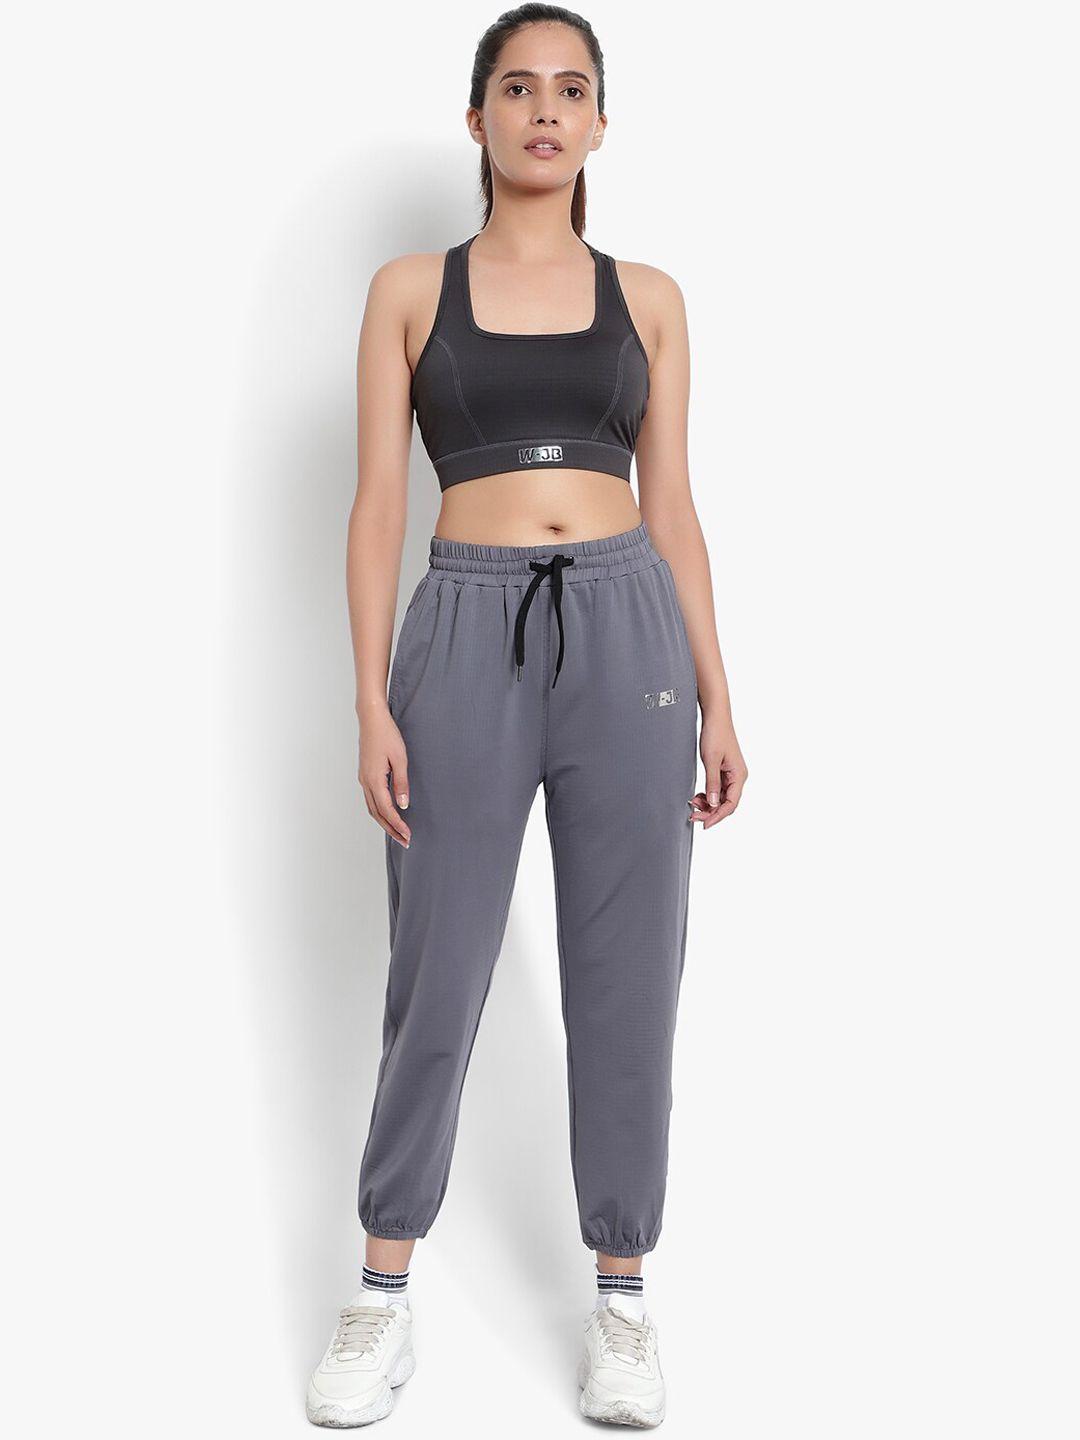 wearjukebox women grey solid jogger & sports bra co-ords